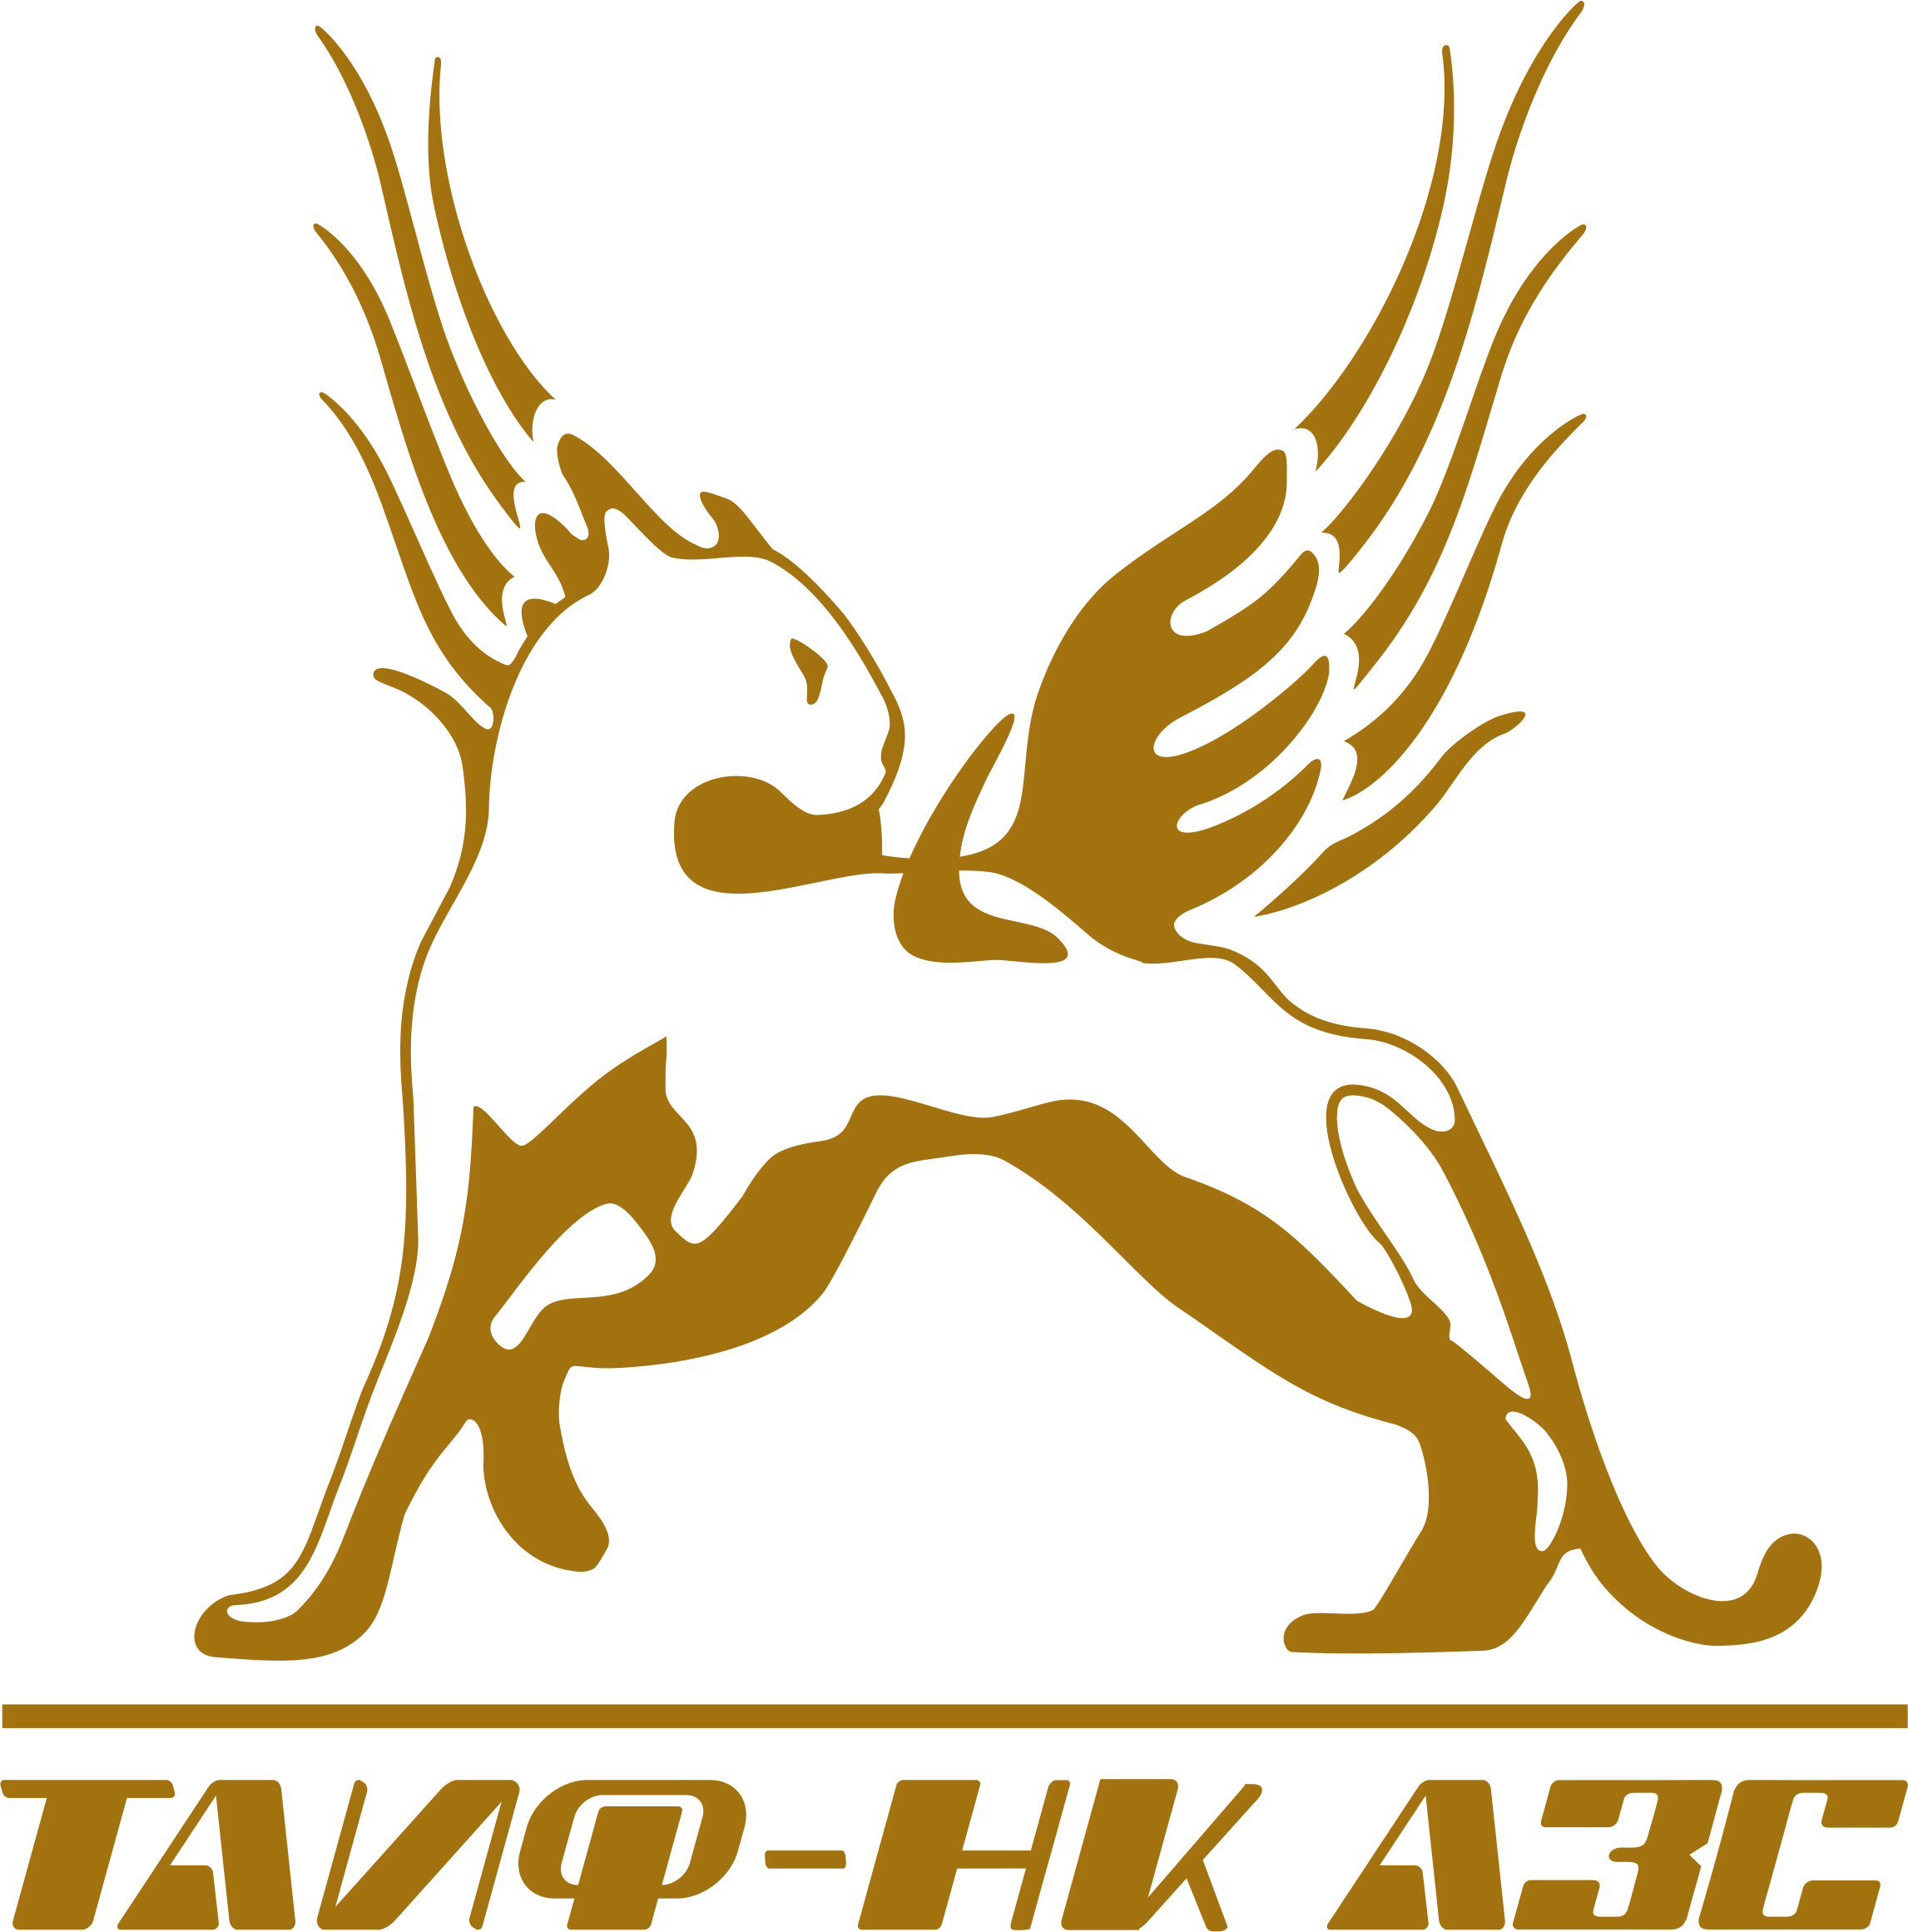 Ооо таиф. ТАИФ эмблема. ТАИФ НК logo. ТАИФ НК АЗС логотип. Нижнекамск компания ТАИФ логотип.